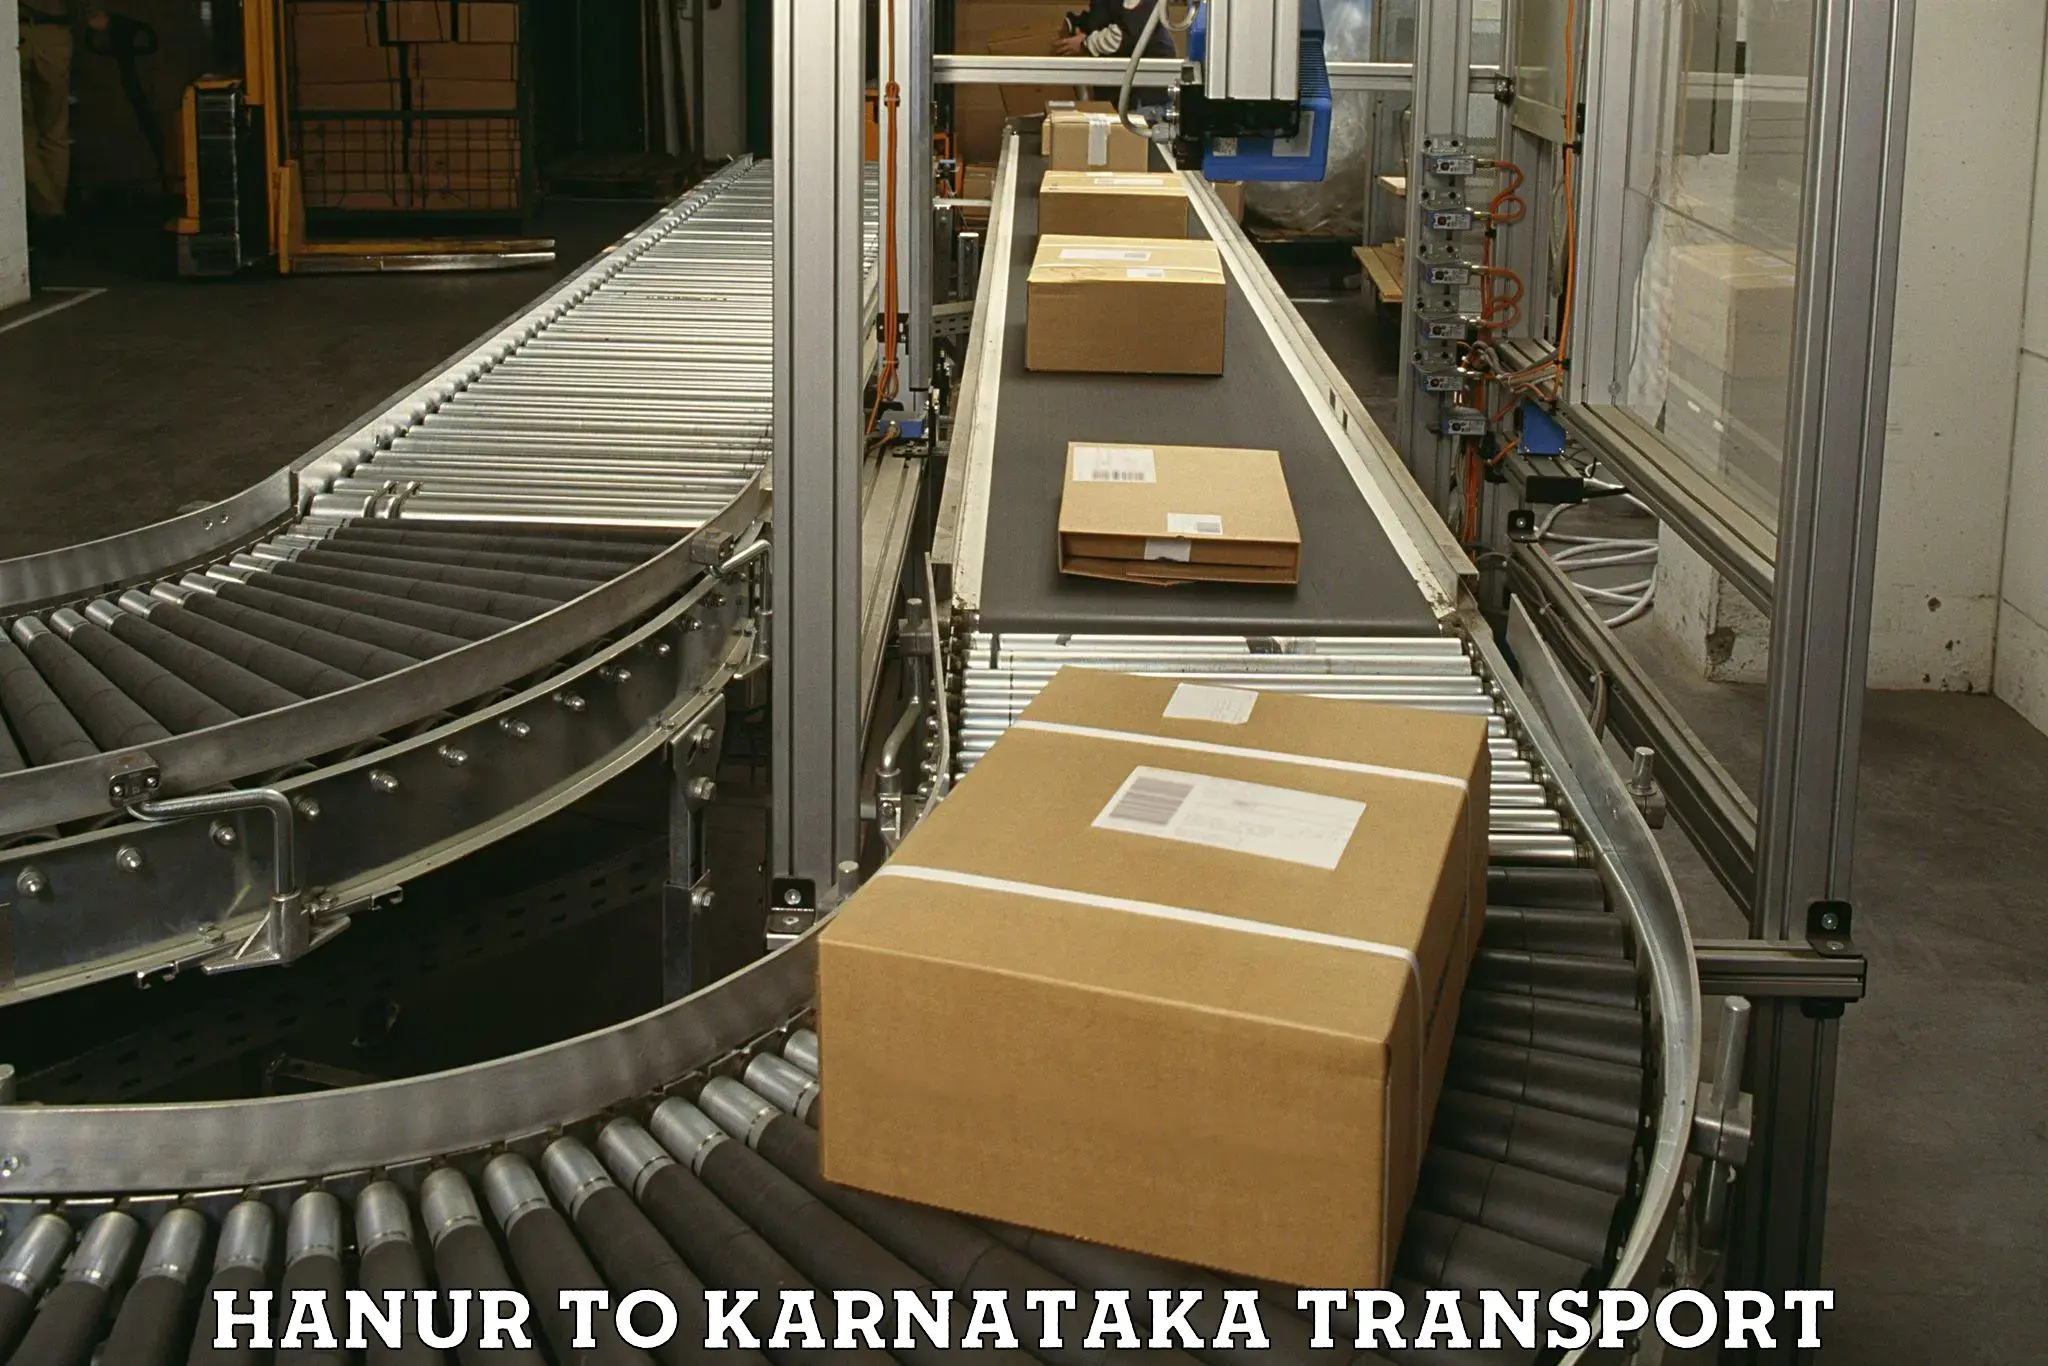 Express transport services Hanur to Karkala